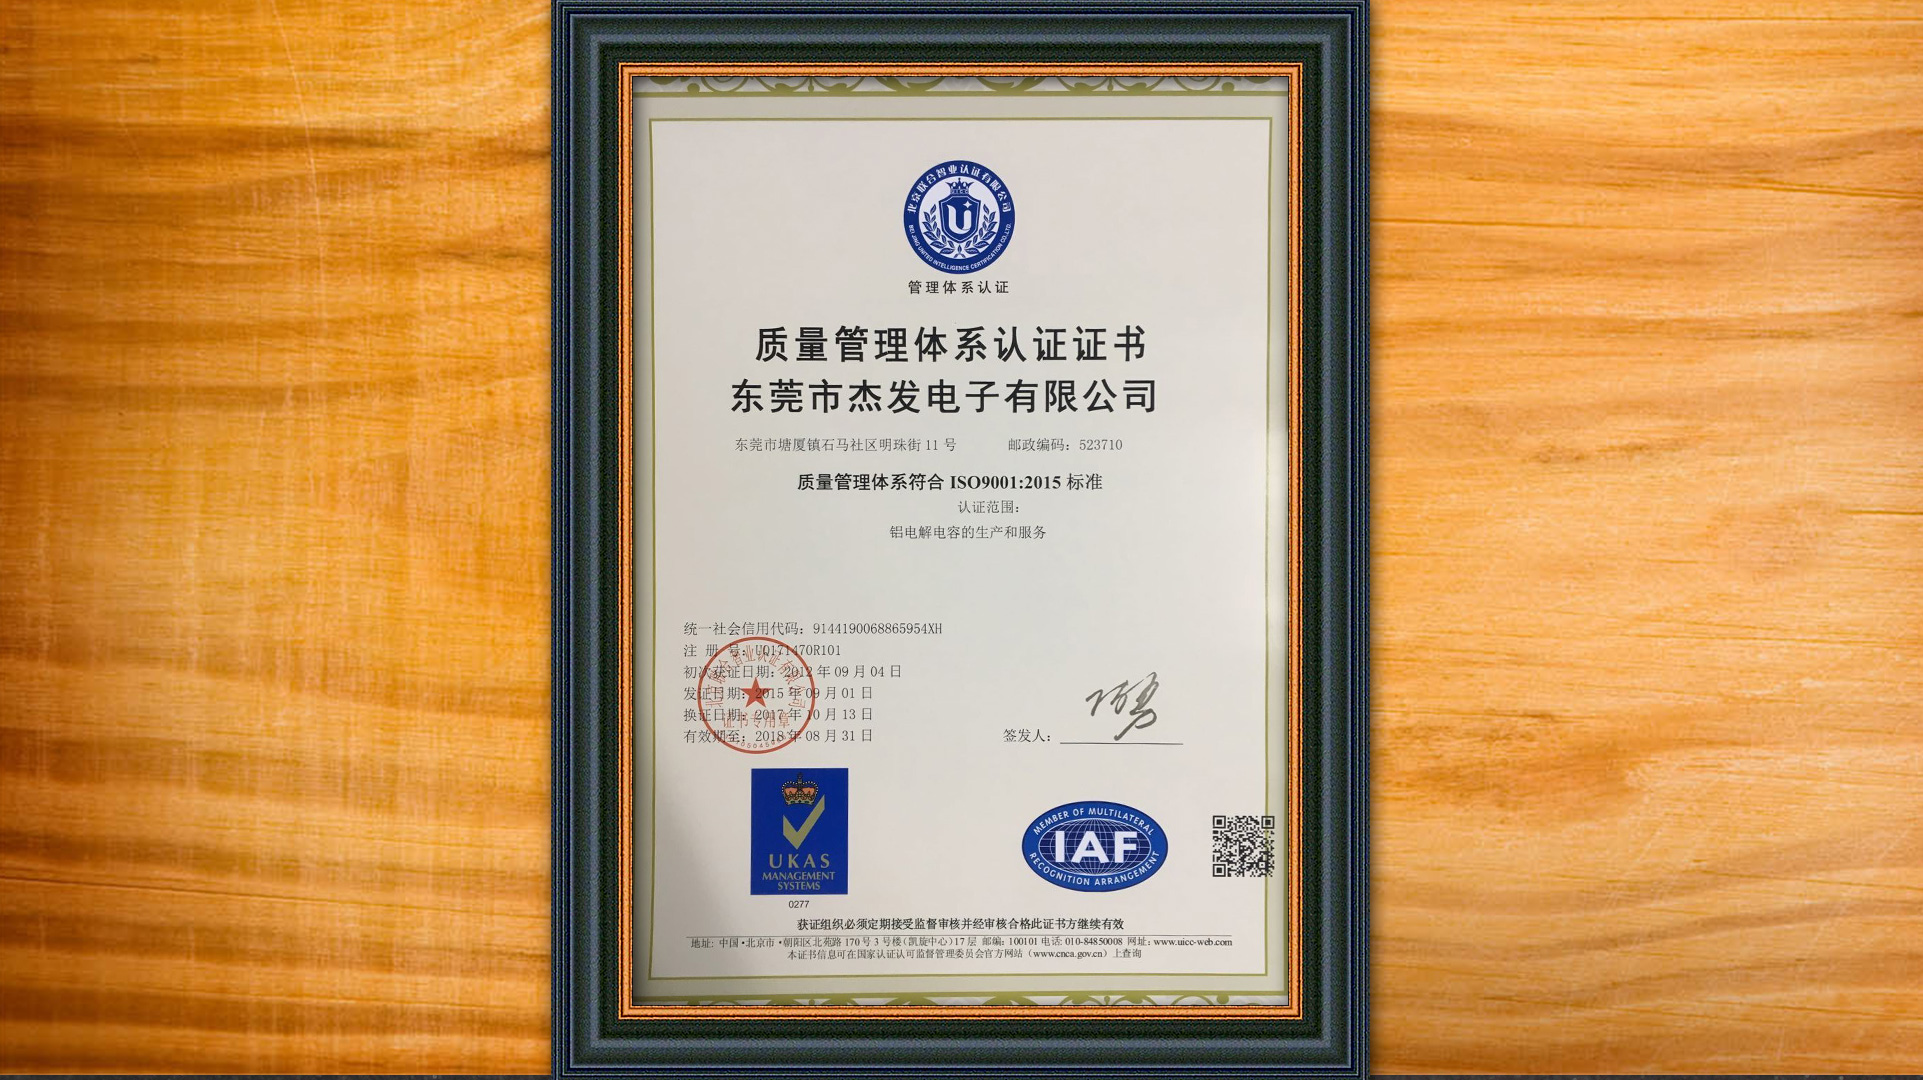 质量管理证书2015版中文